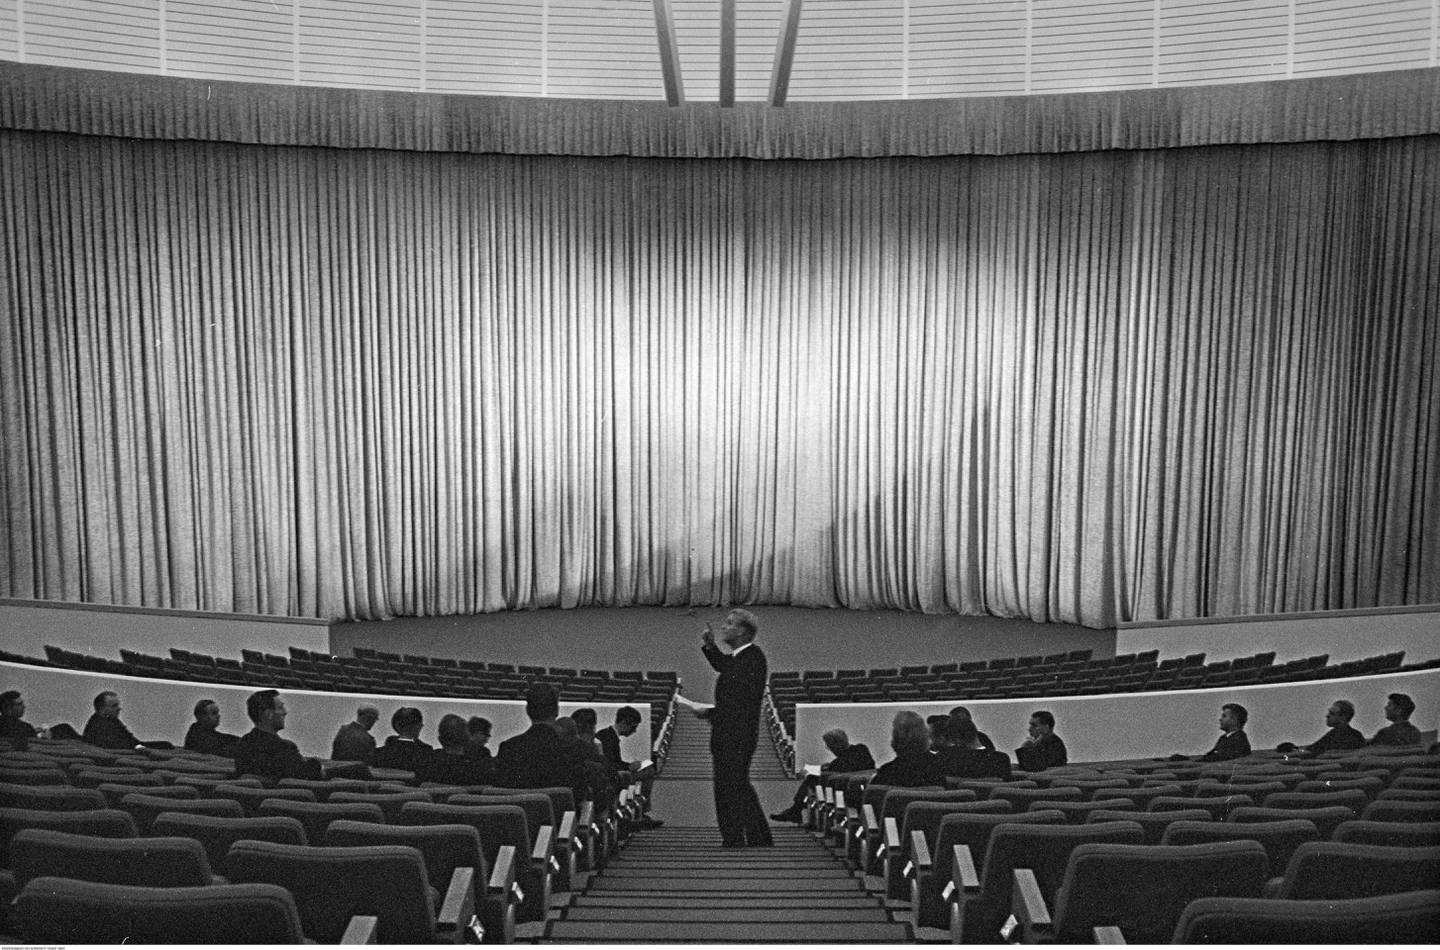 Et sceneteppet er trukket foran scenen. I salen står en mann i midtgangen og peker. I salen sitter det flere menn på de første radene. De ser på mannen som peker.